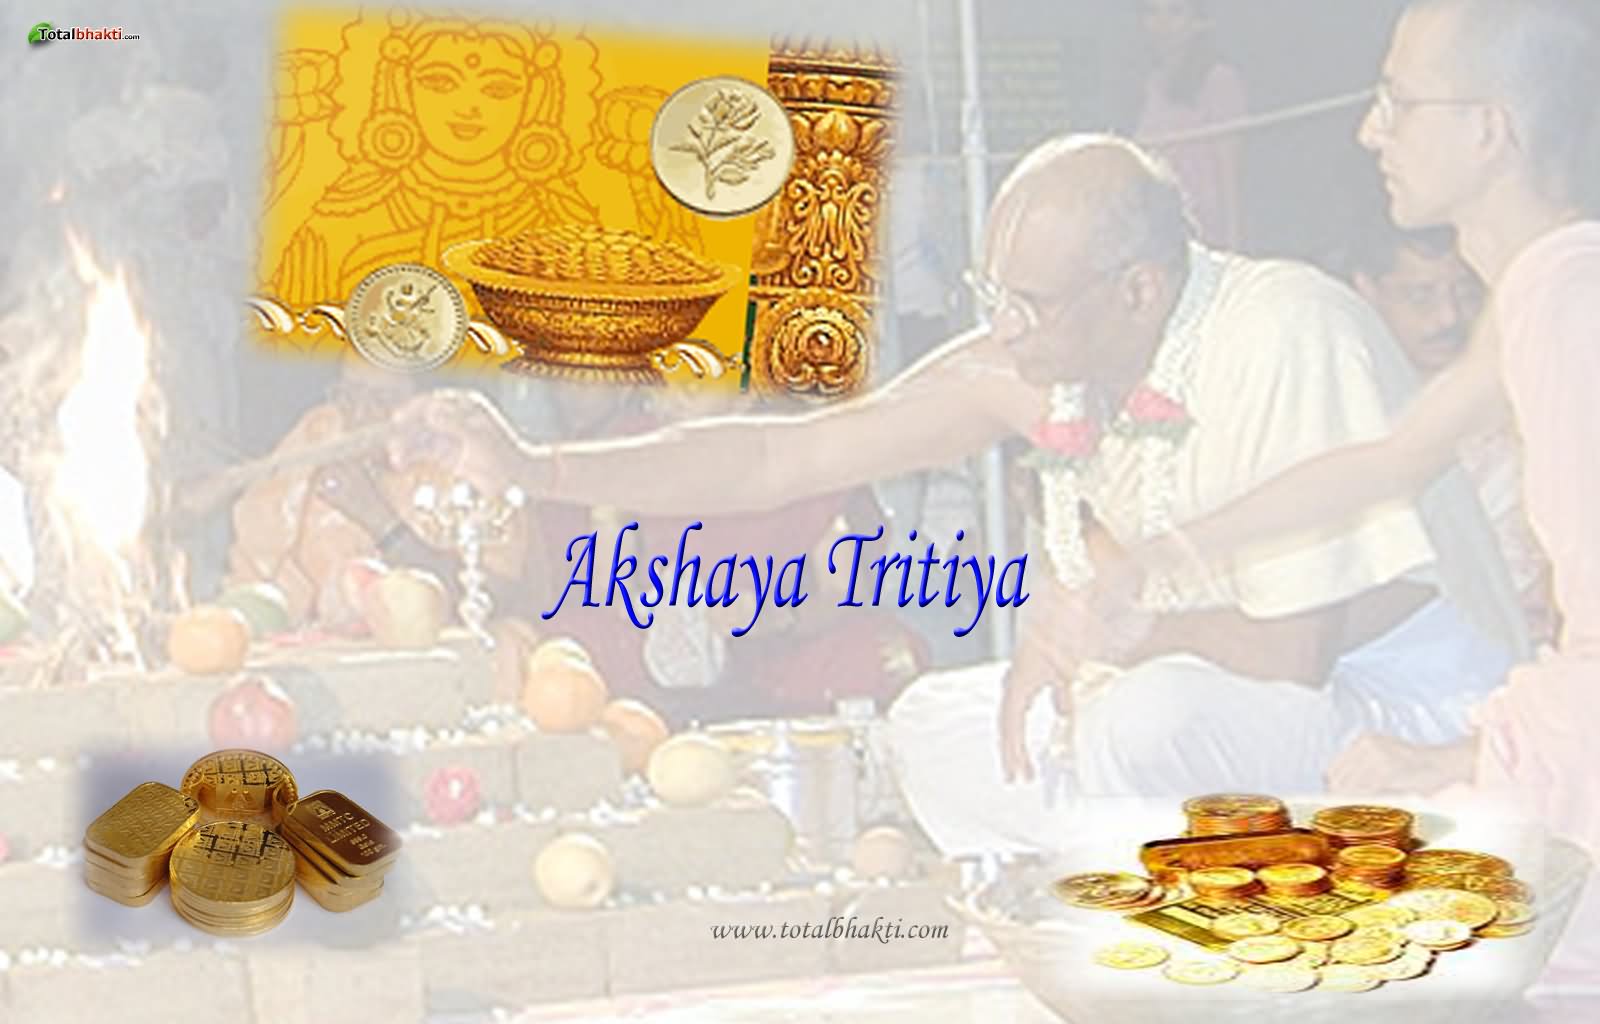 Akshaya Tritiya Greetings For Share On Facebook